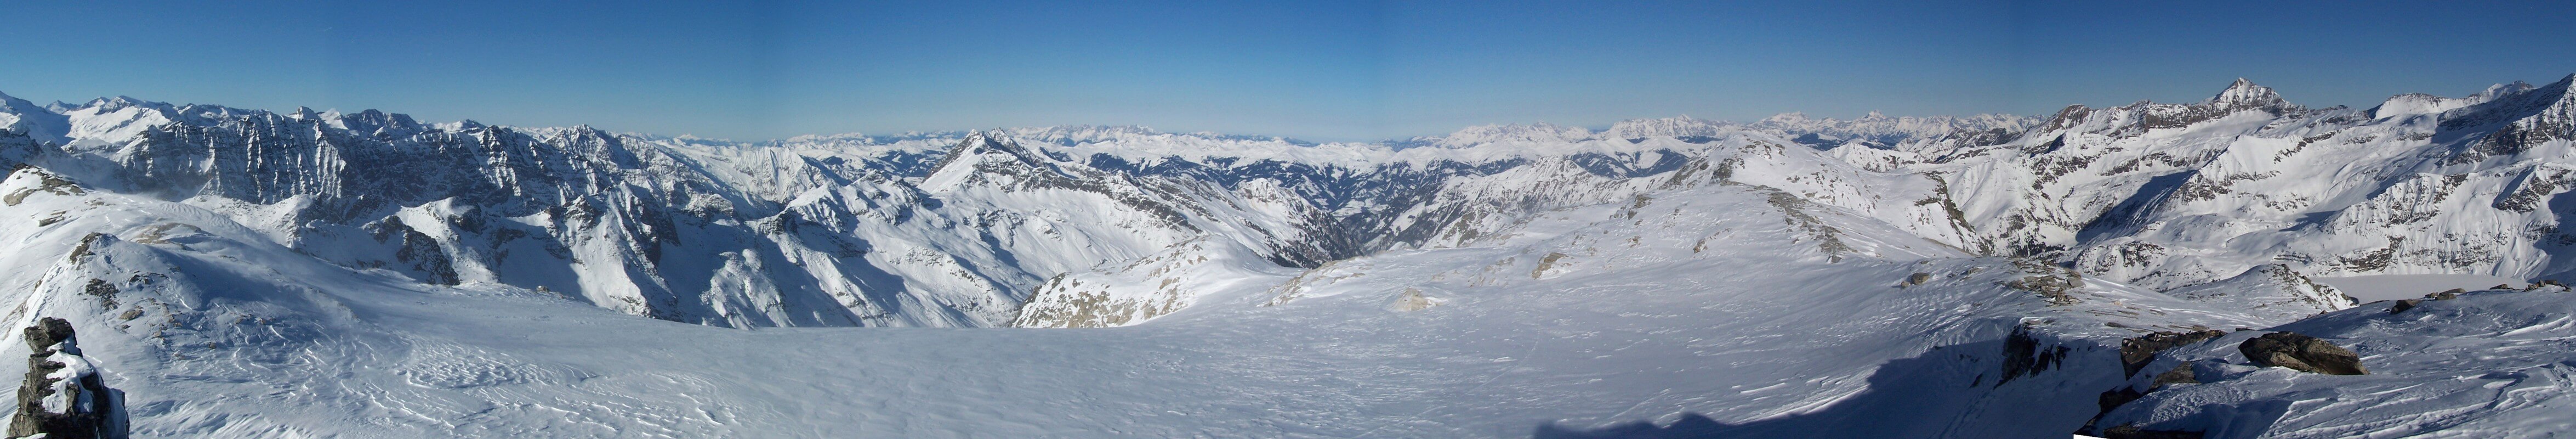 Hoch Fürlegg Granatspitzgruppe - Hohe Tauern Rakousko panorama 15